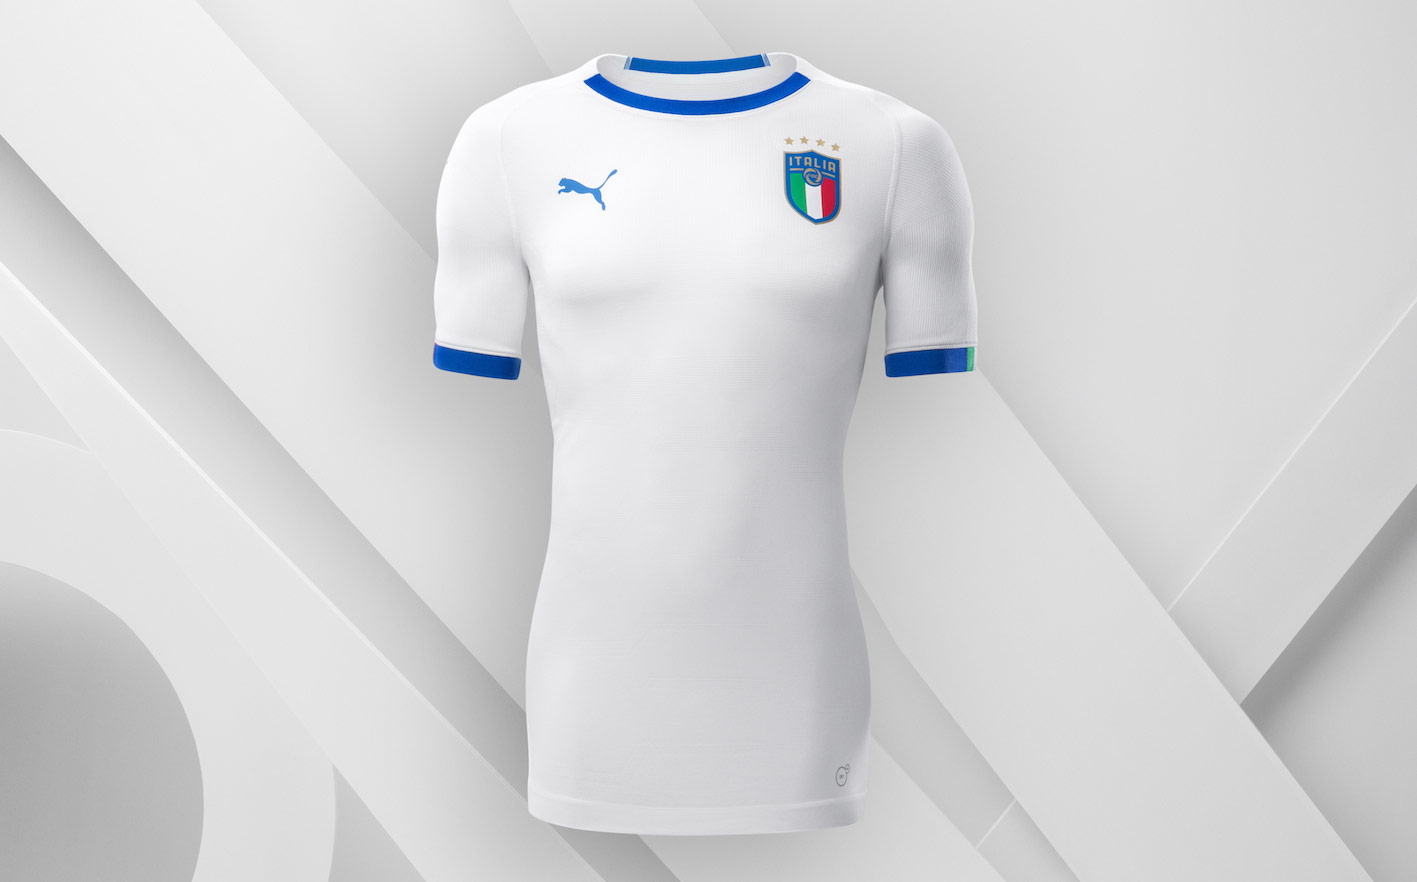 Seconda maglia Italia 2018-2020 Puma, bianca e azzurra con tricolore